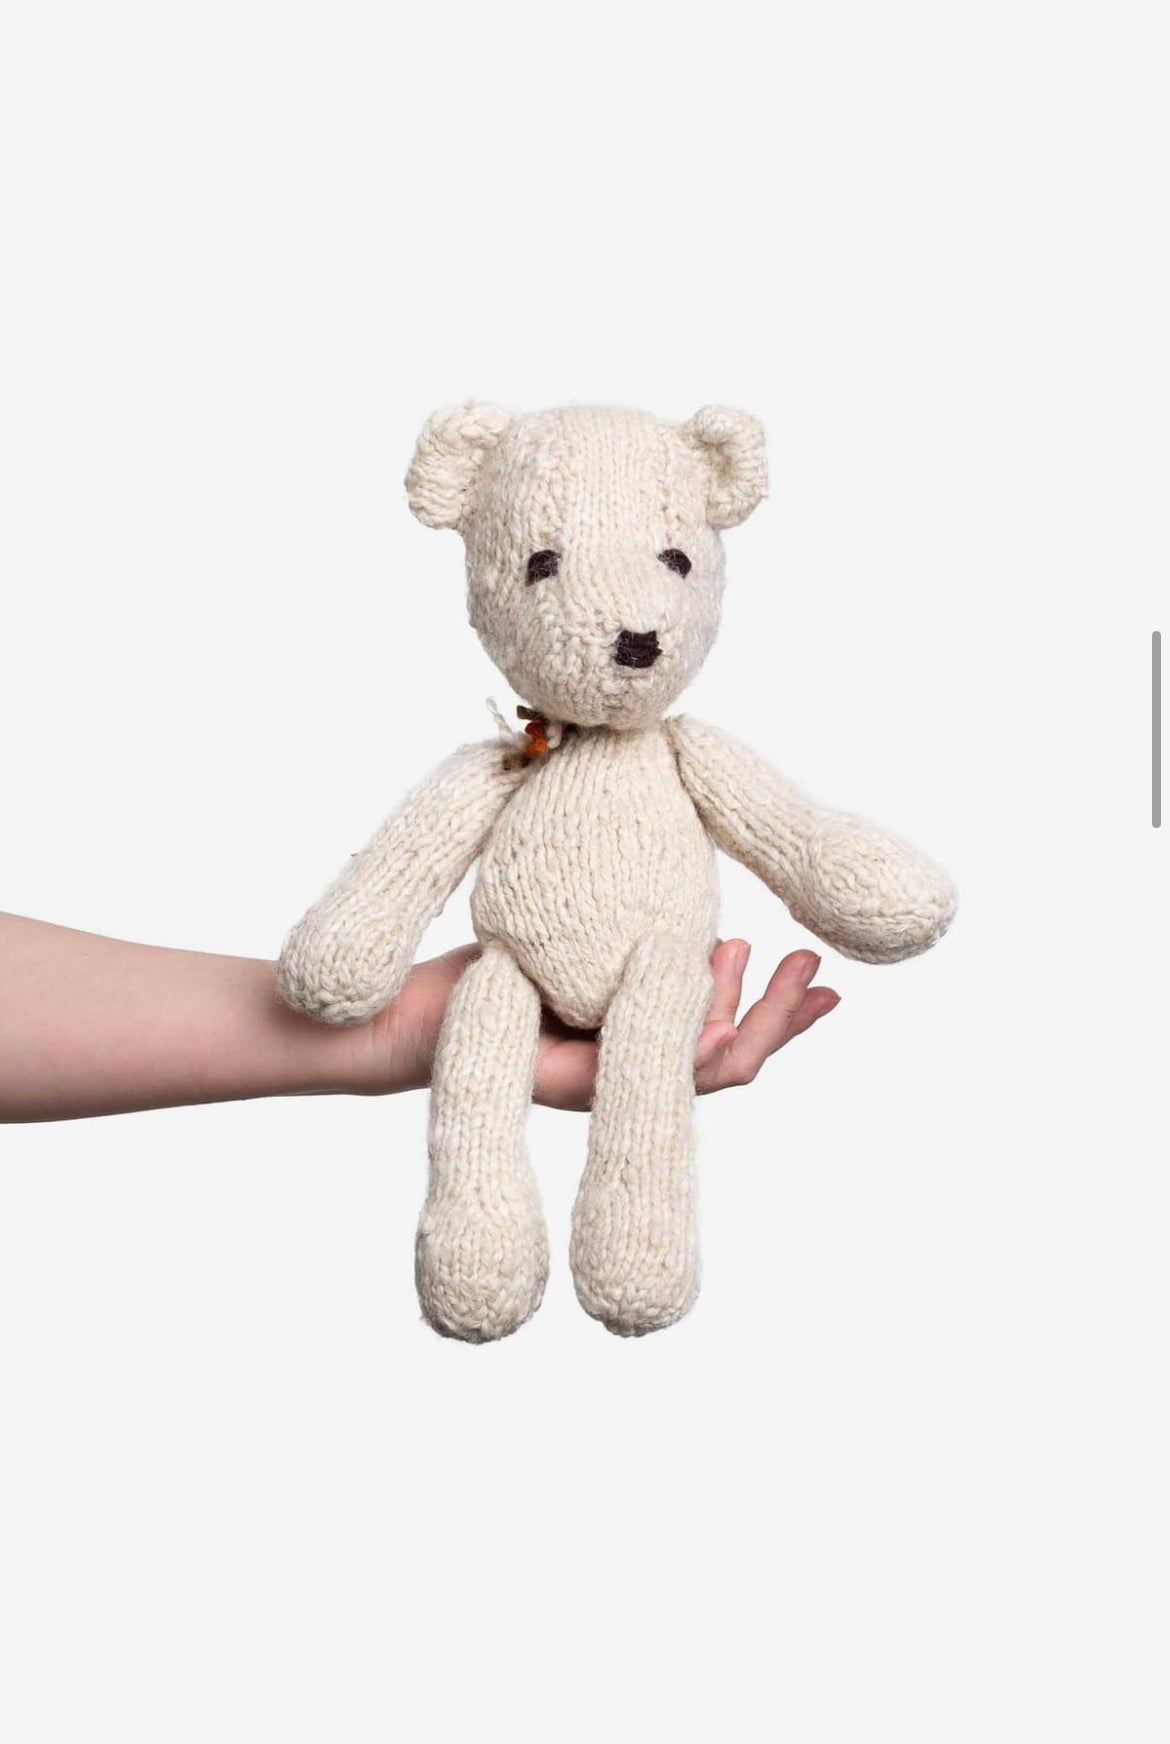 Hand Knitted Teddy Bear